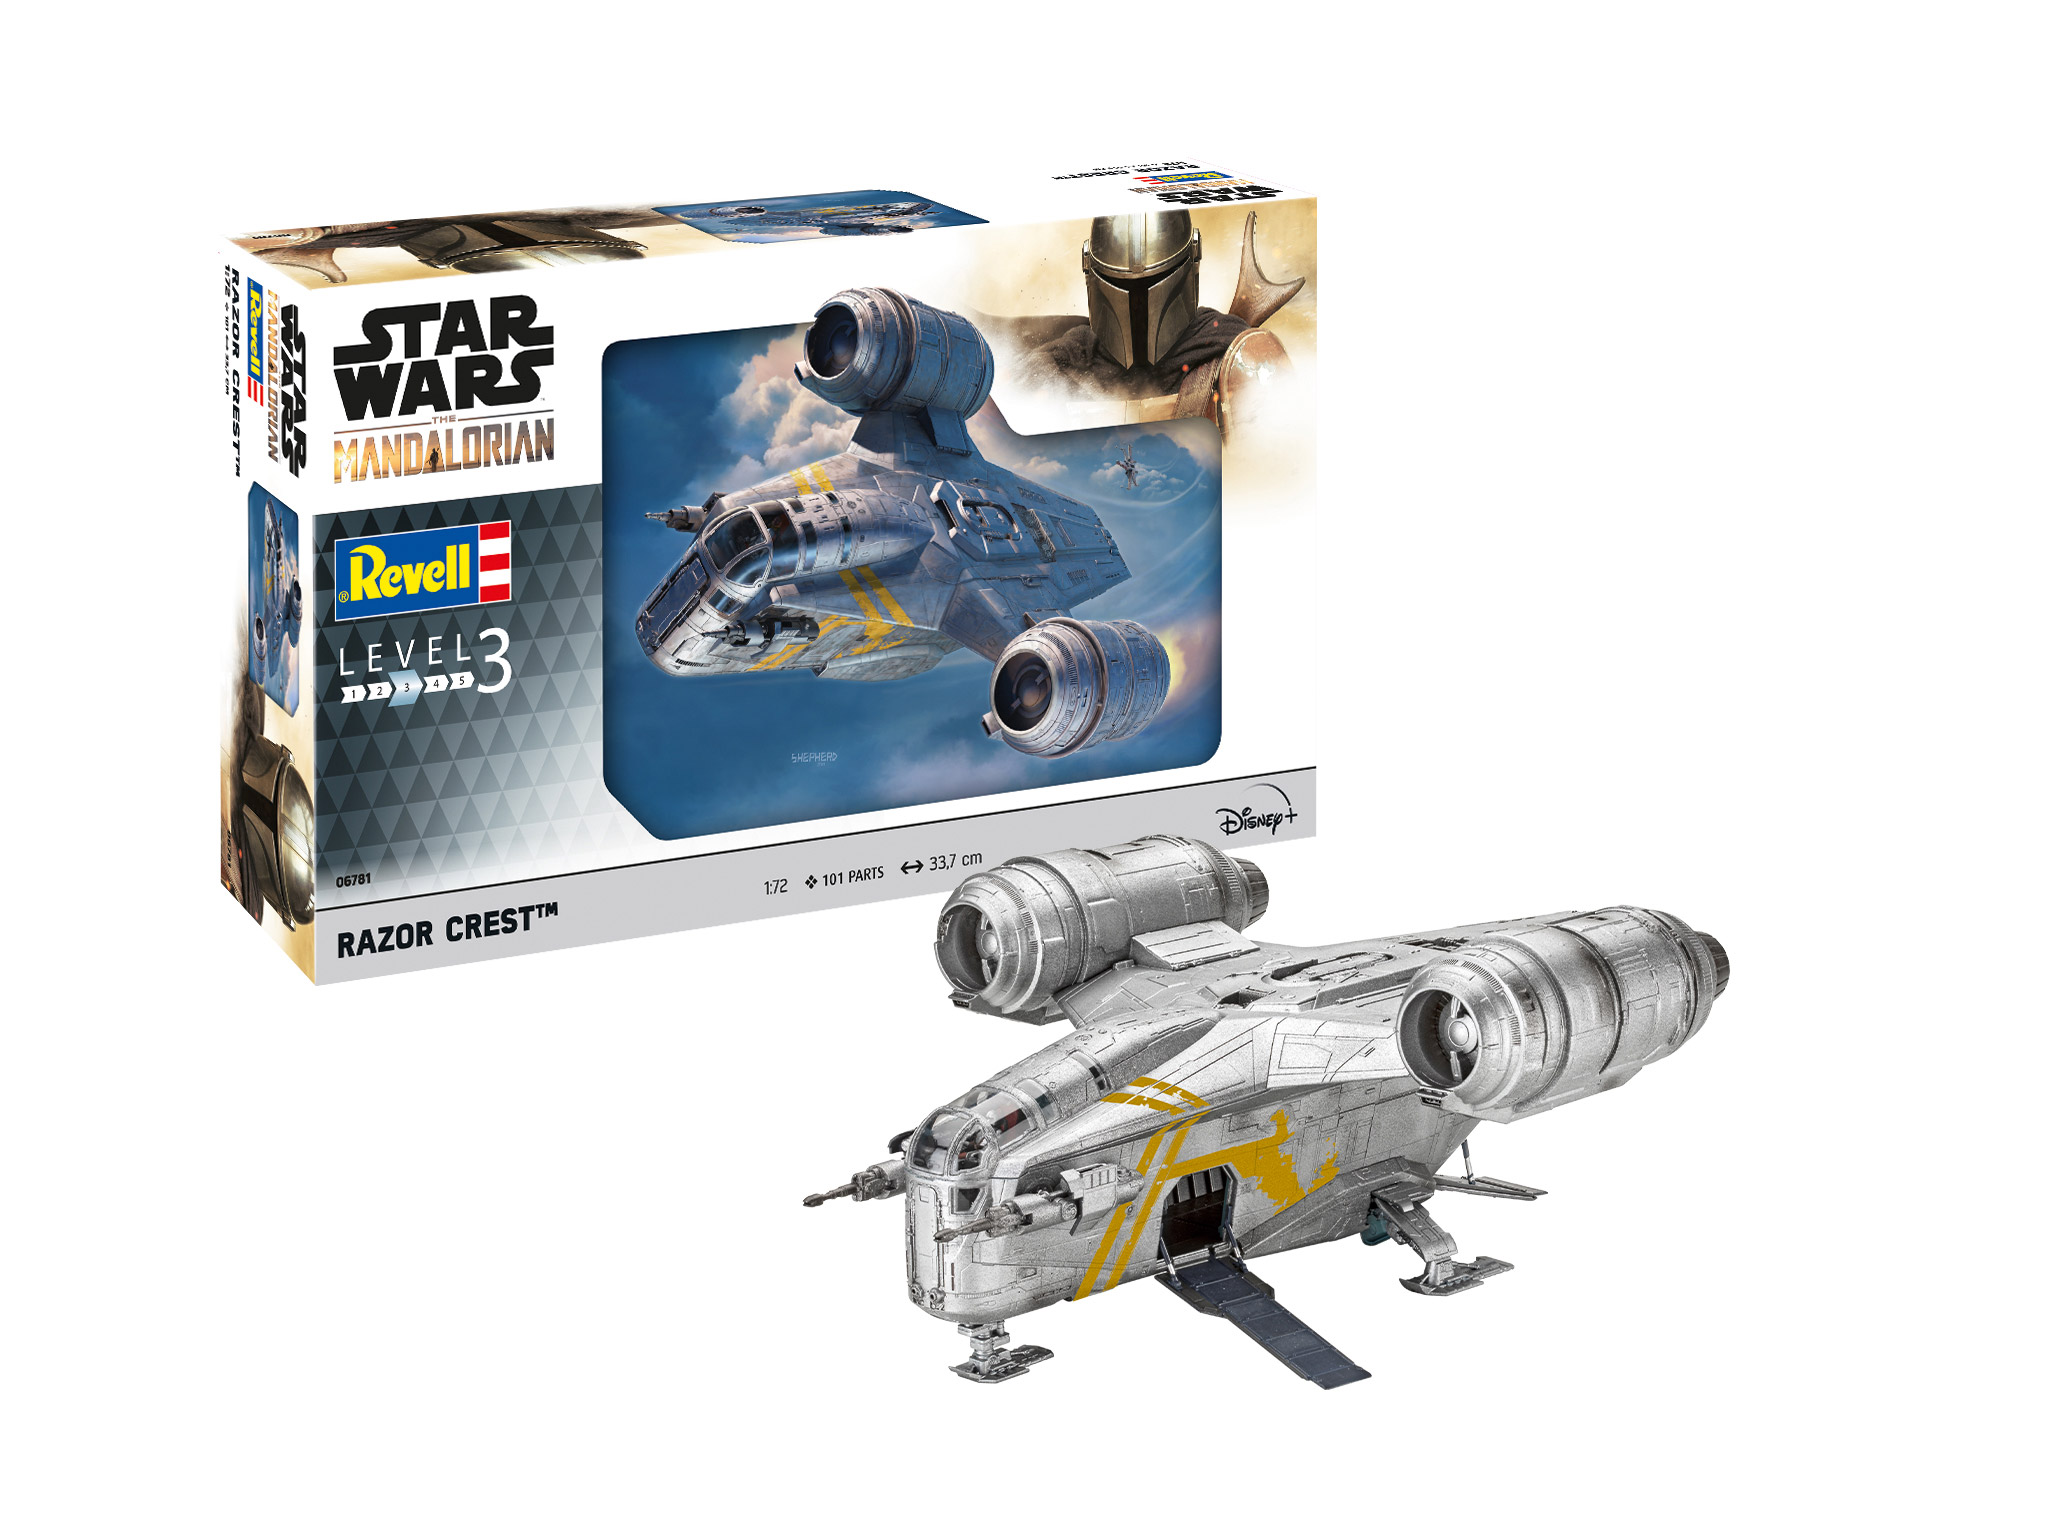 Revell Star Wars The Force Awakens New Plastic Model Kit Disney Level 3 10+ 